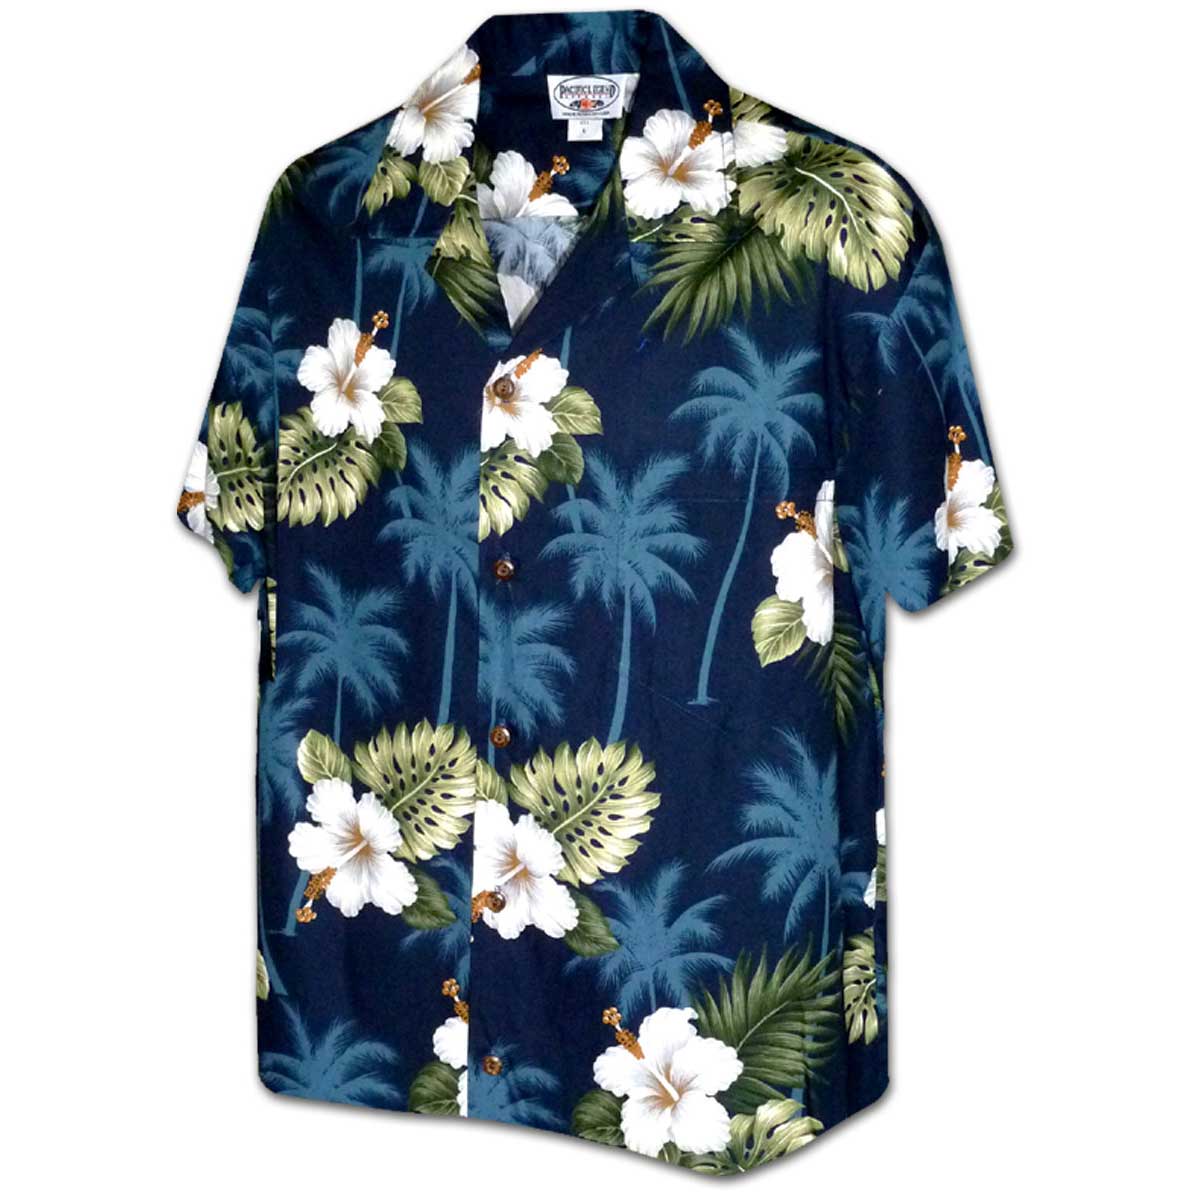 Kilauea Navy Hawaiian Shirt